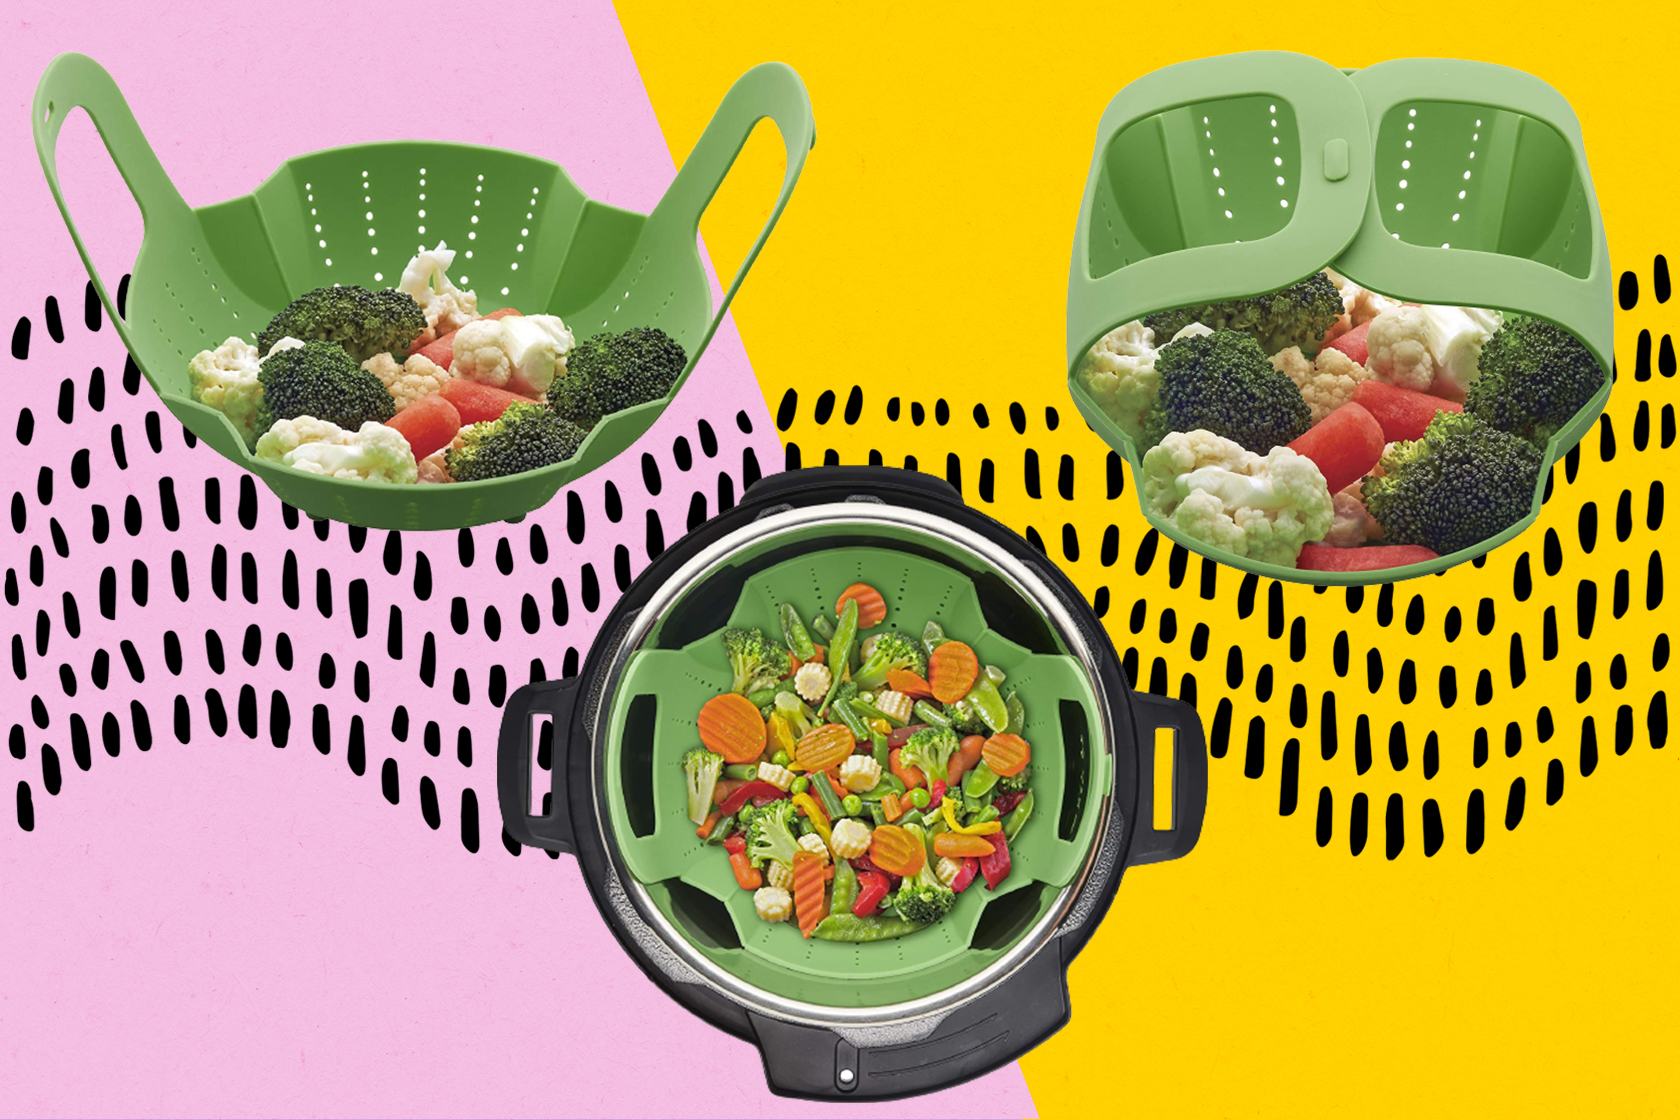 This Instant Pot steamer basket cooks tasty meals for under $10